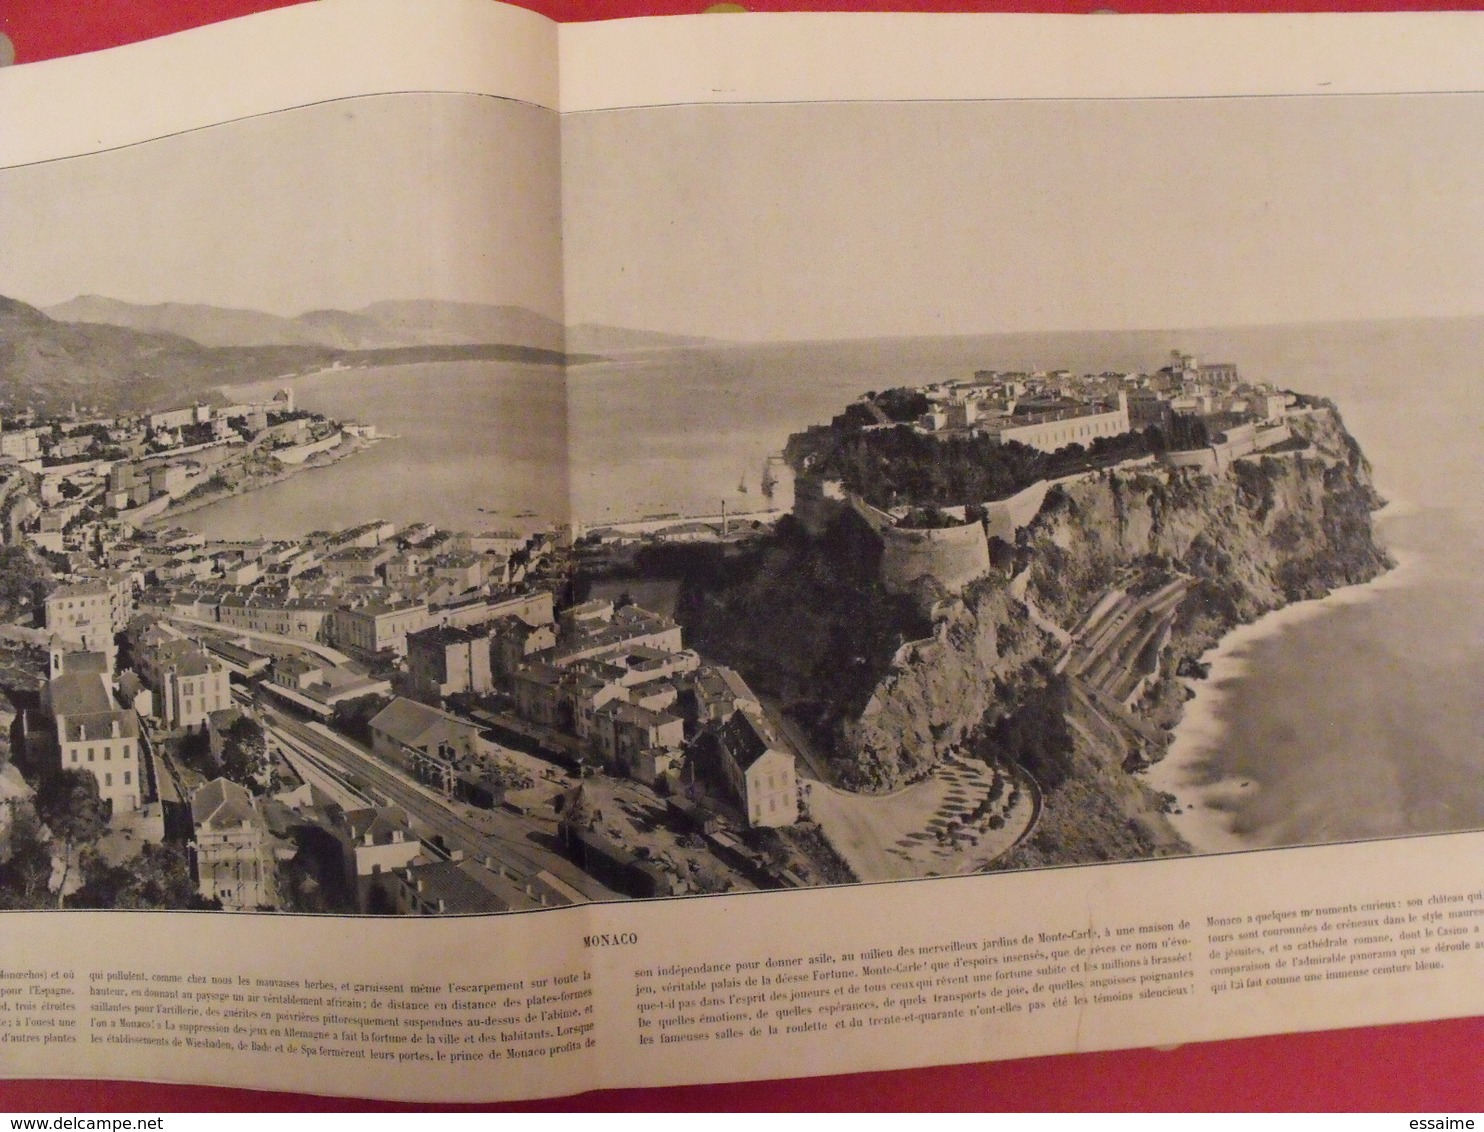 380 photographies. le Panorama. merveilles de la France, Belgique, Suisse, Algérie, Tunisie. Neurdein. 1895 Baschet